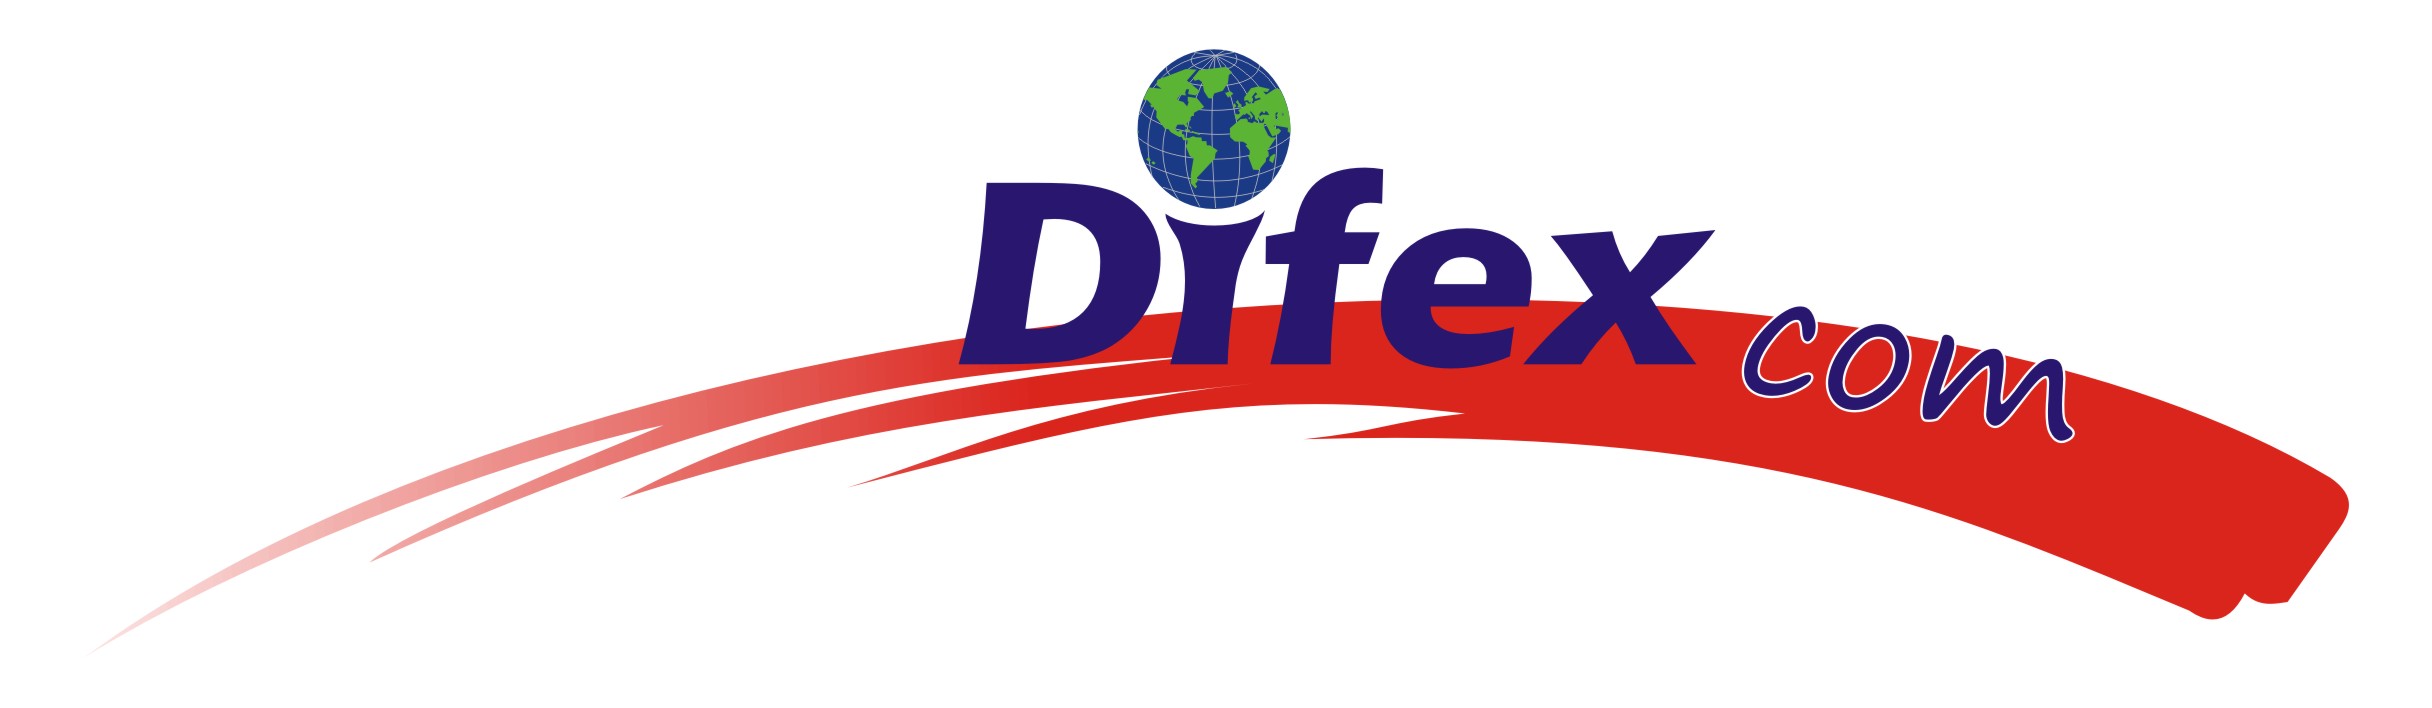 DIFEX COM